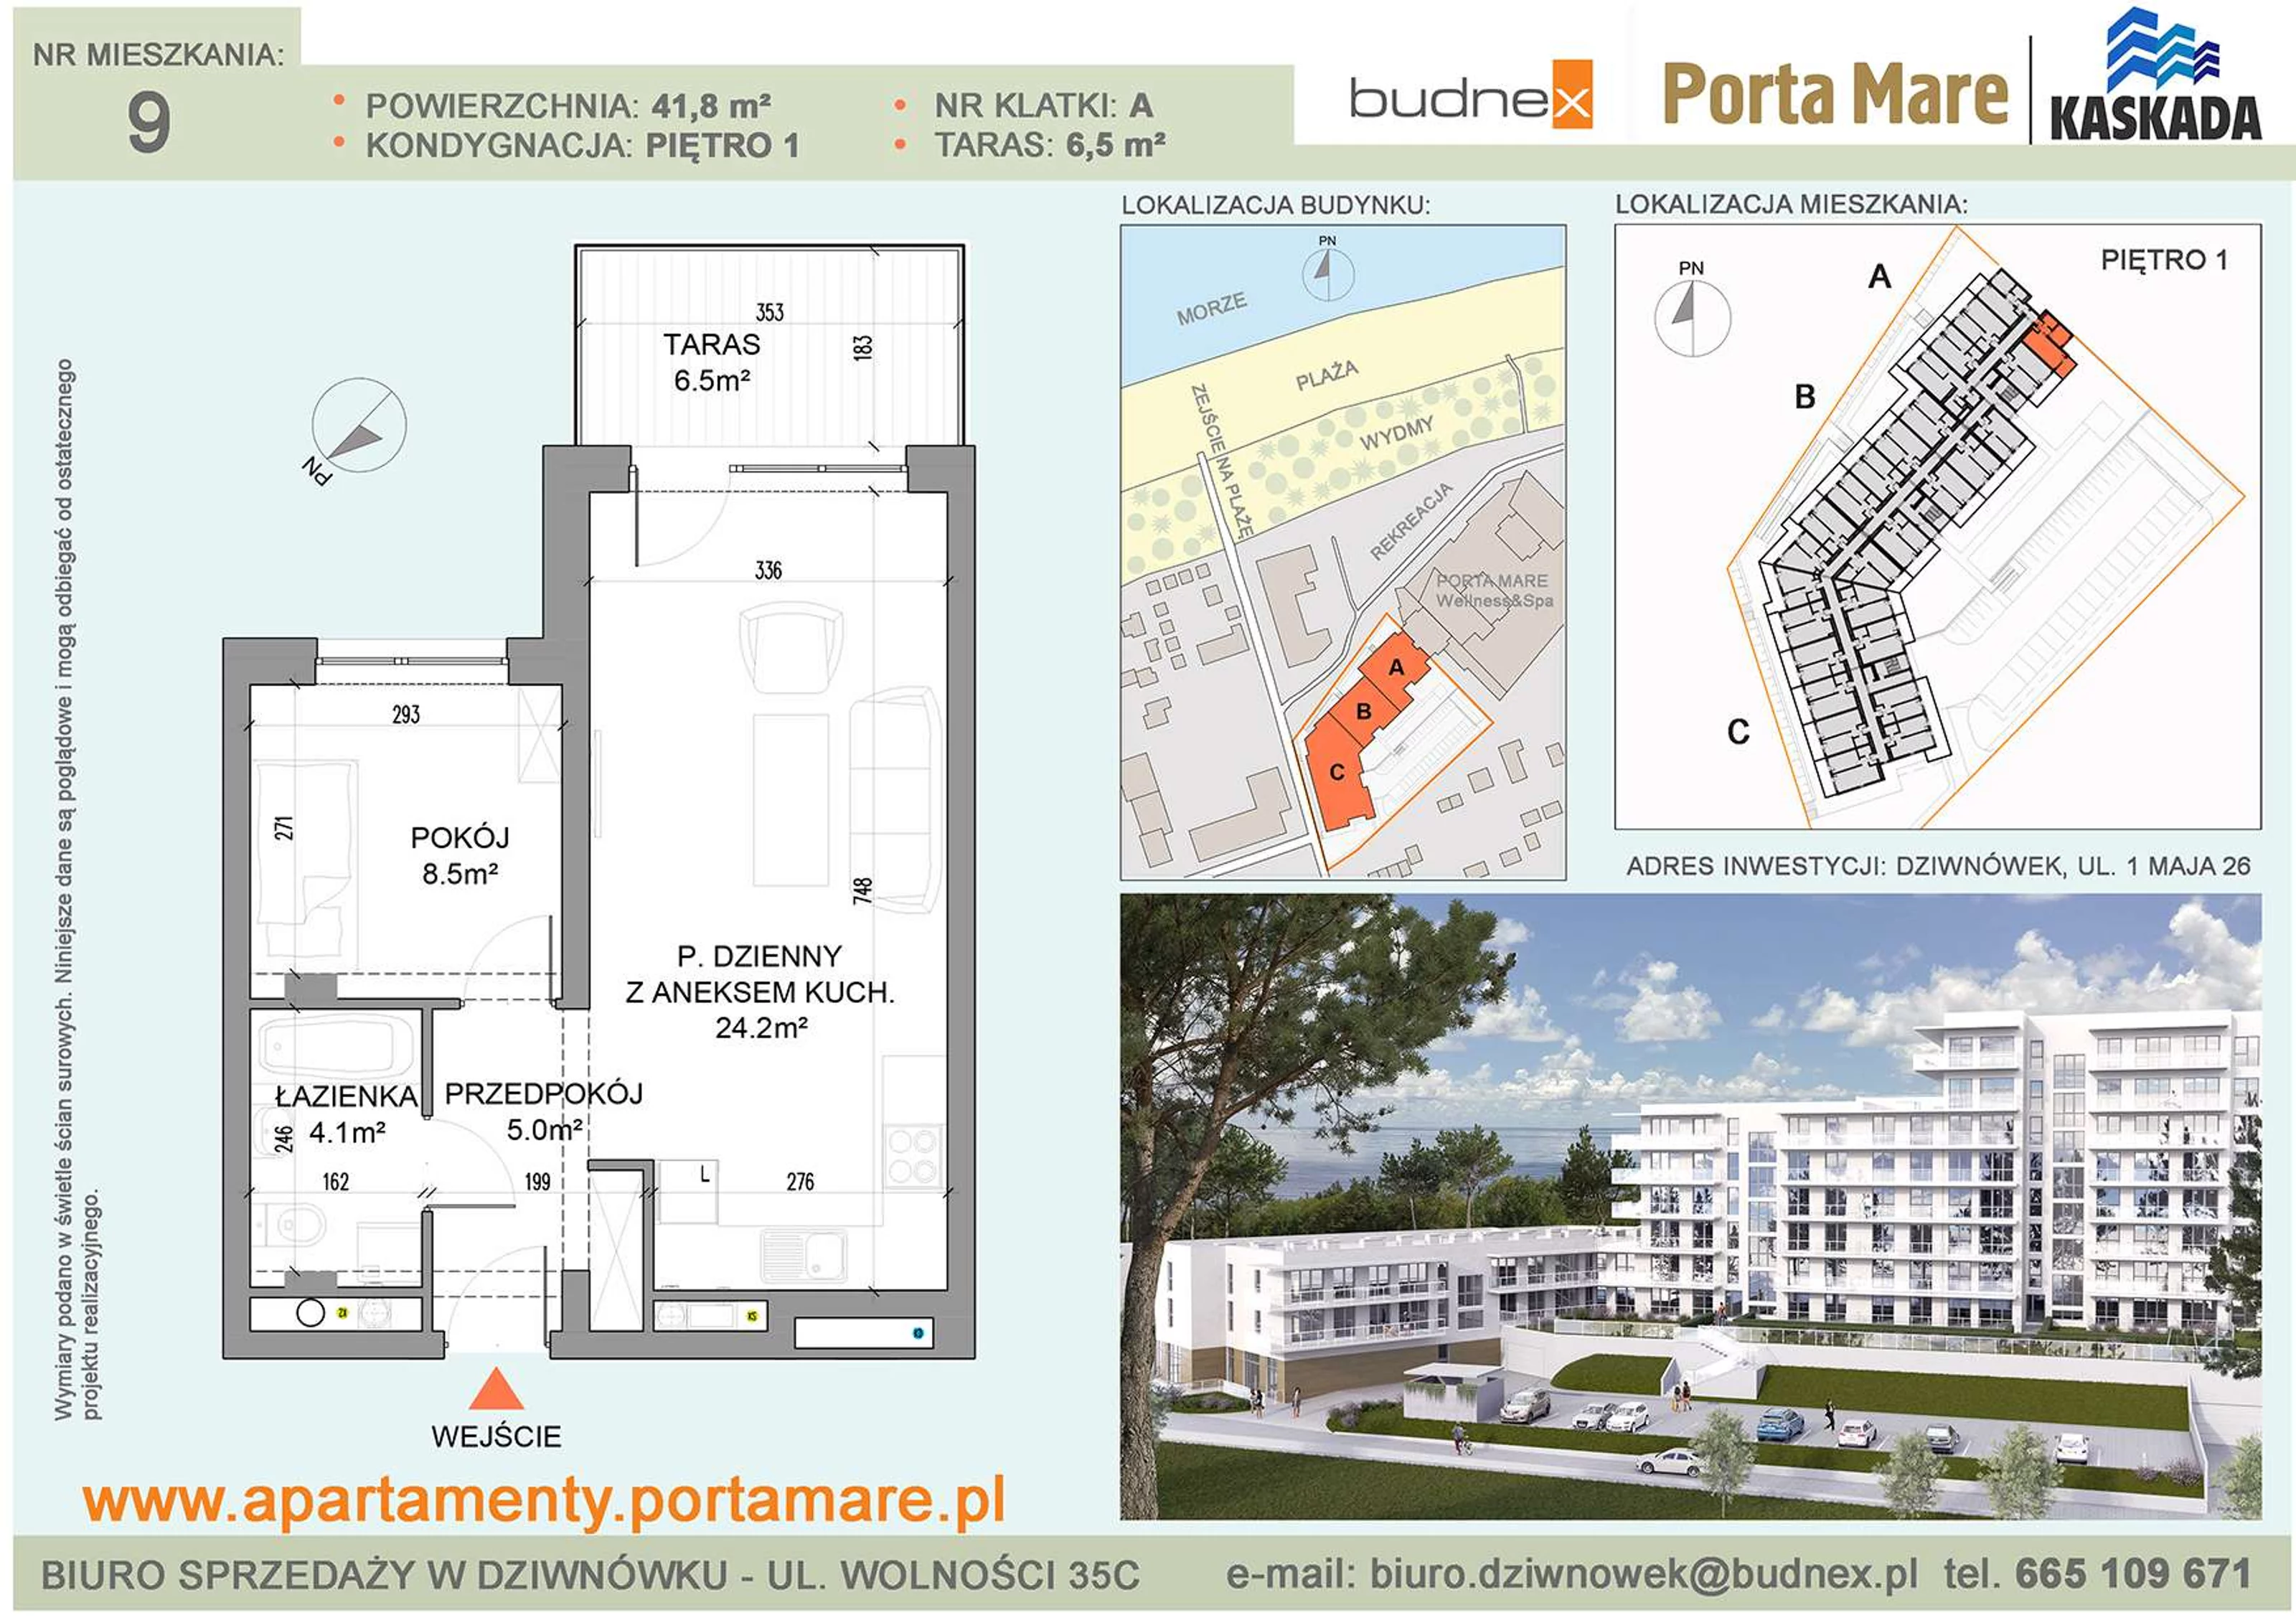 Apartament 41,80 m², piętro 1, oferta nr A/M09, Porta Mare Kaskada, Dziwnówek, ul. 1 Maja 26